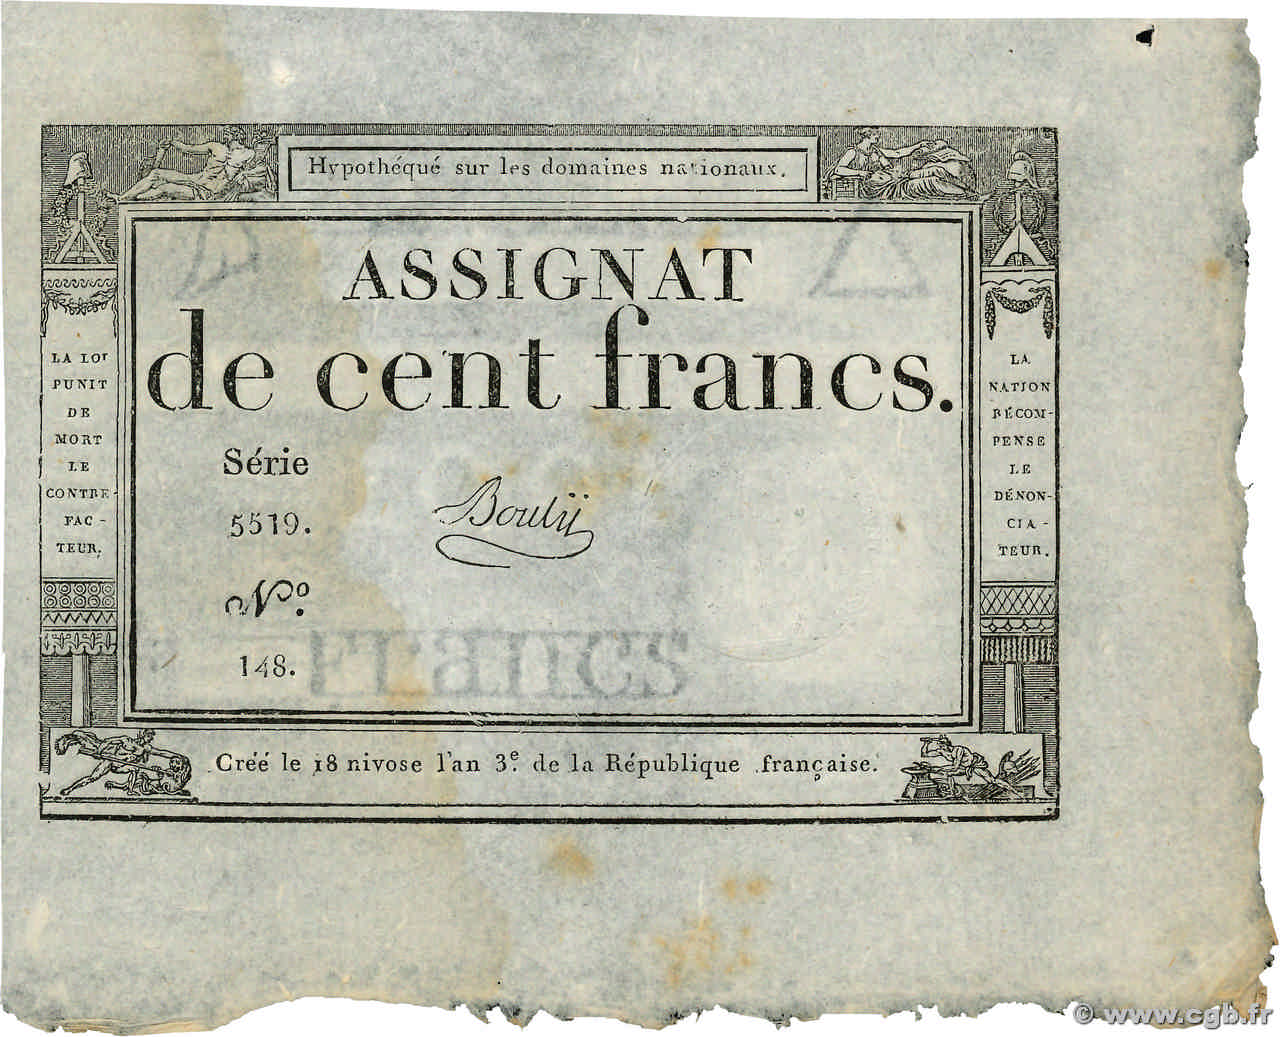 100 Francs FRANCIA  1795 Ass.48a SPL